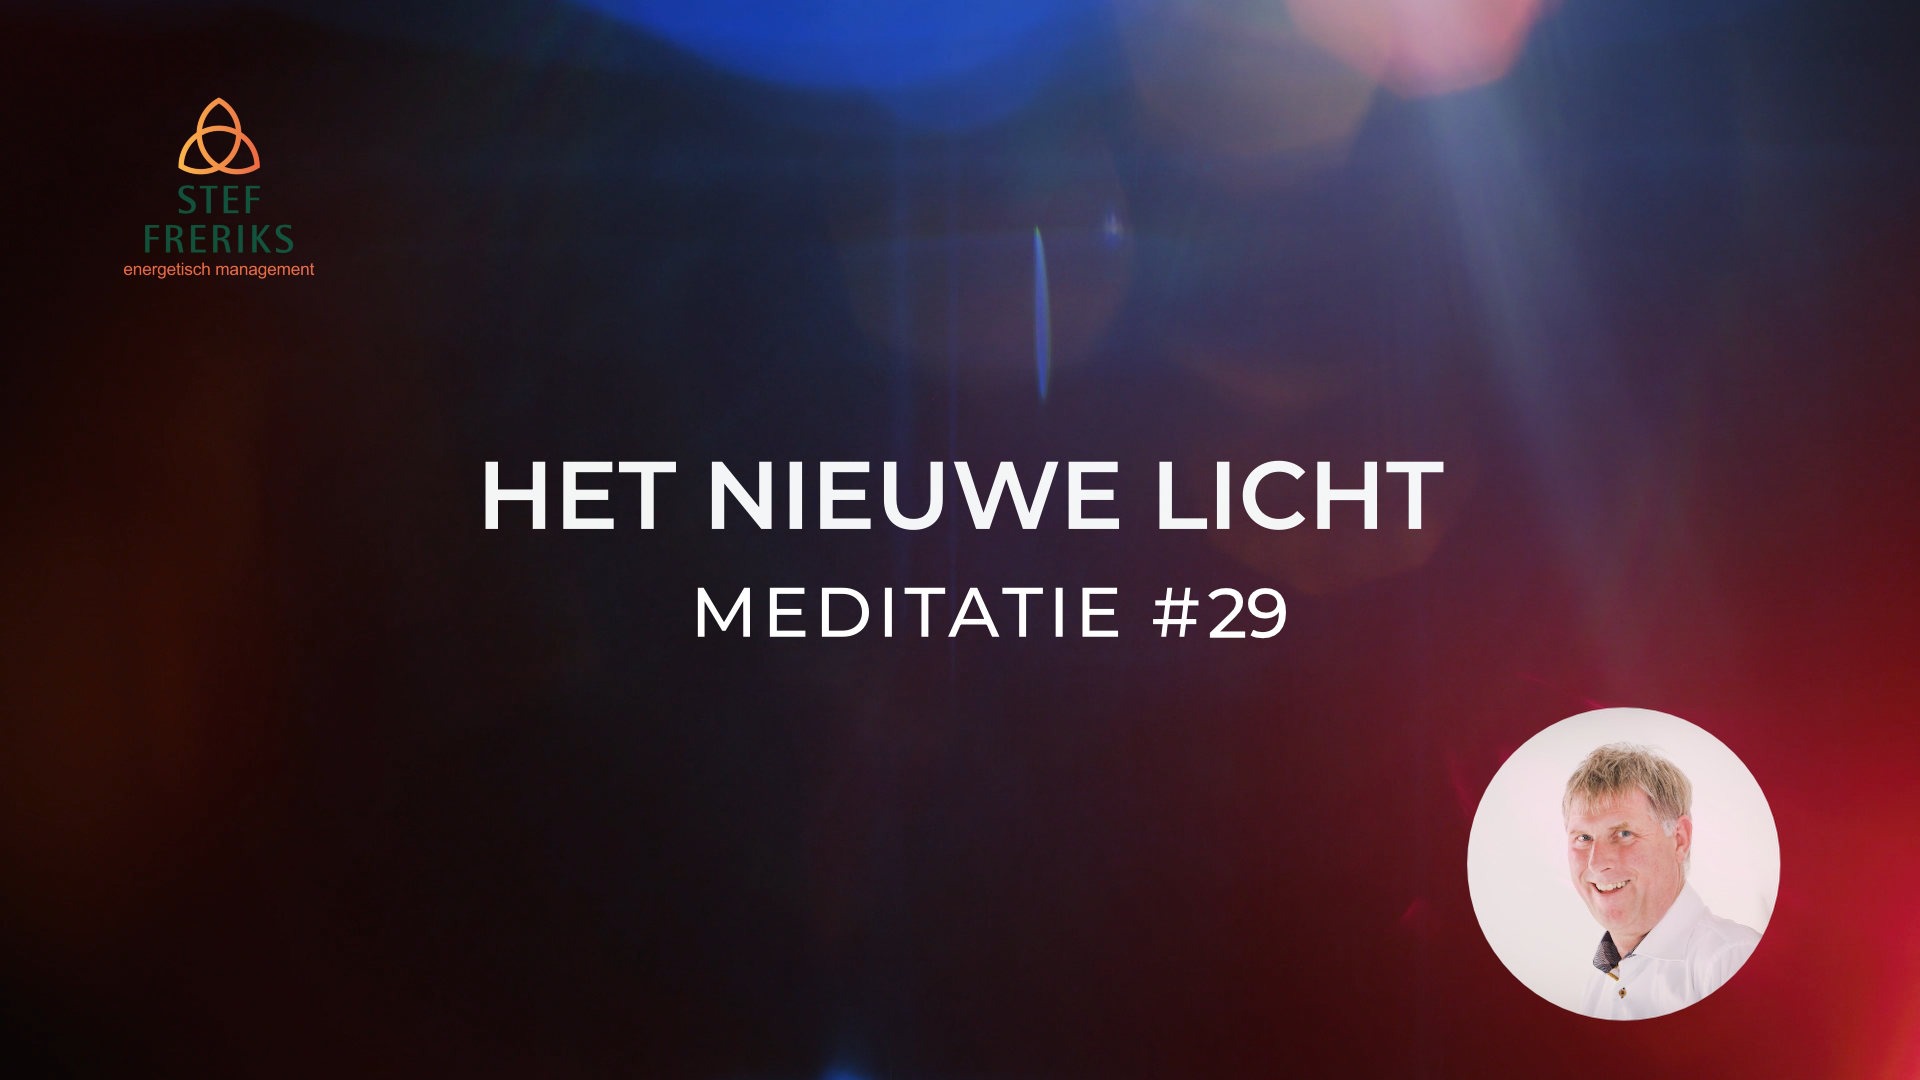 Meditatie #29 uit de serie Het Nieuwe Licht: samengaan